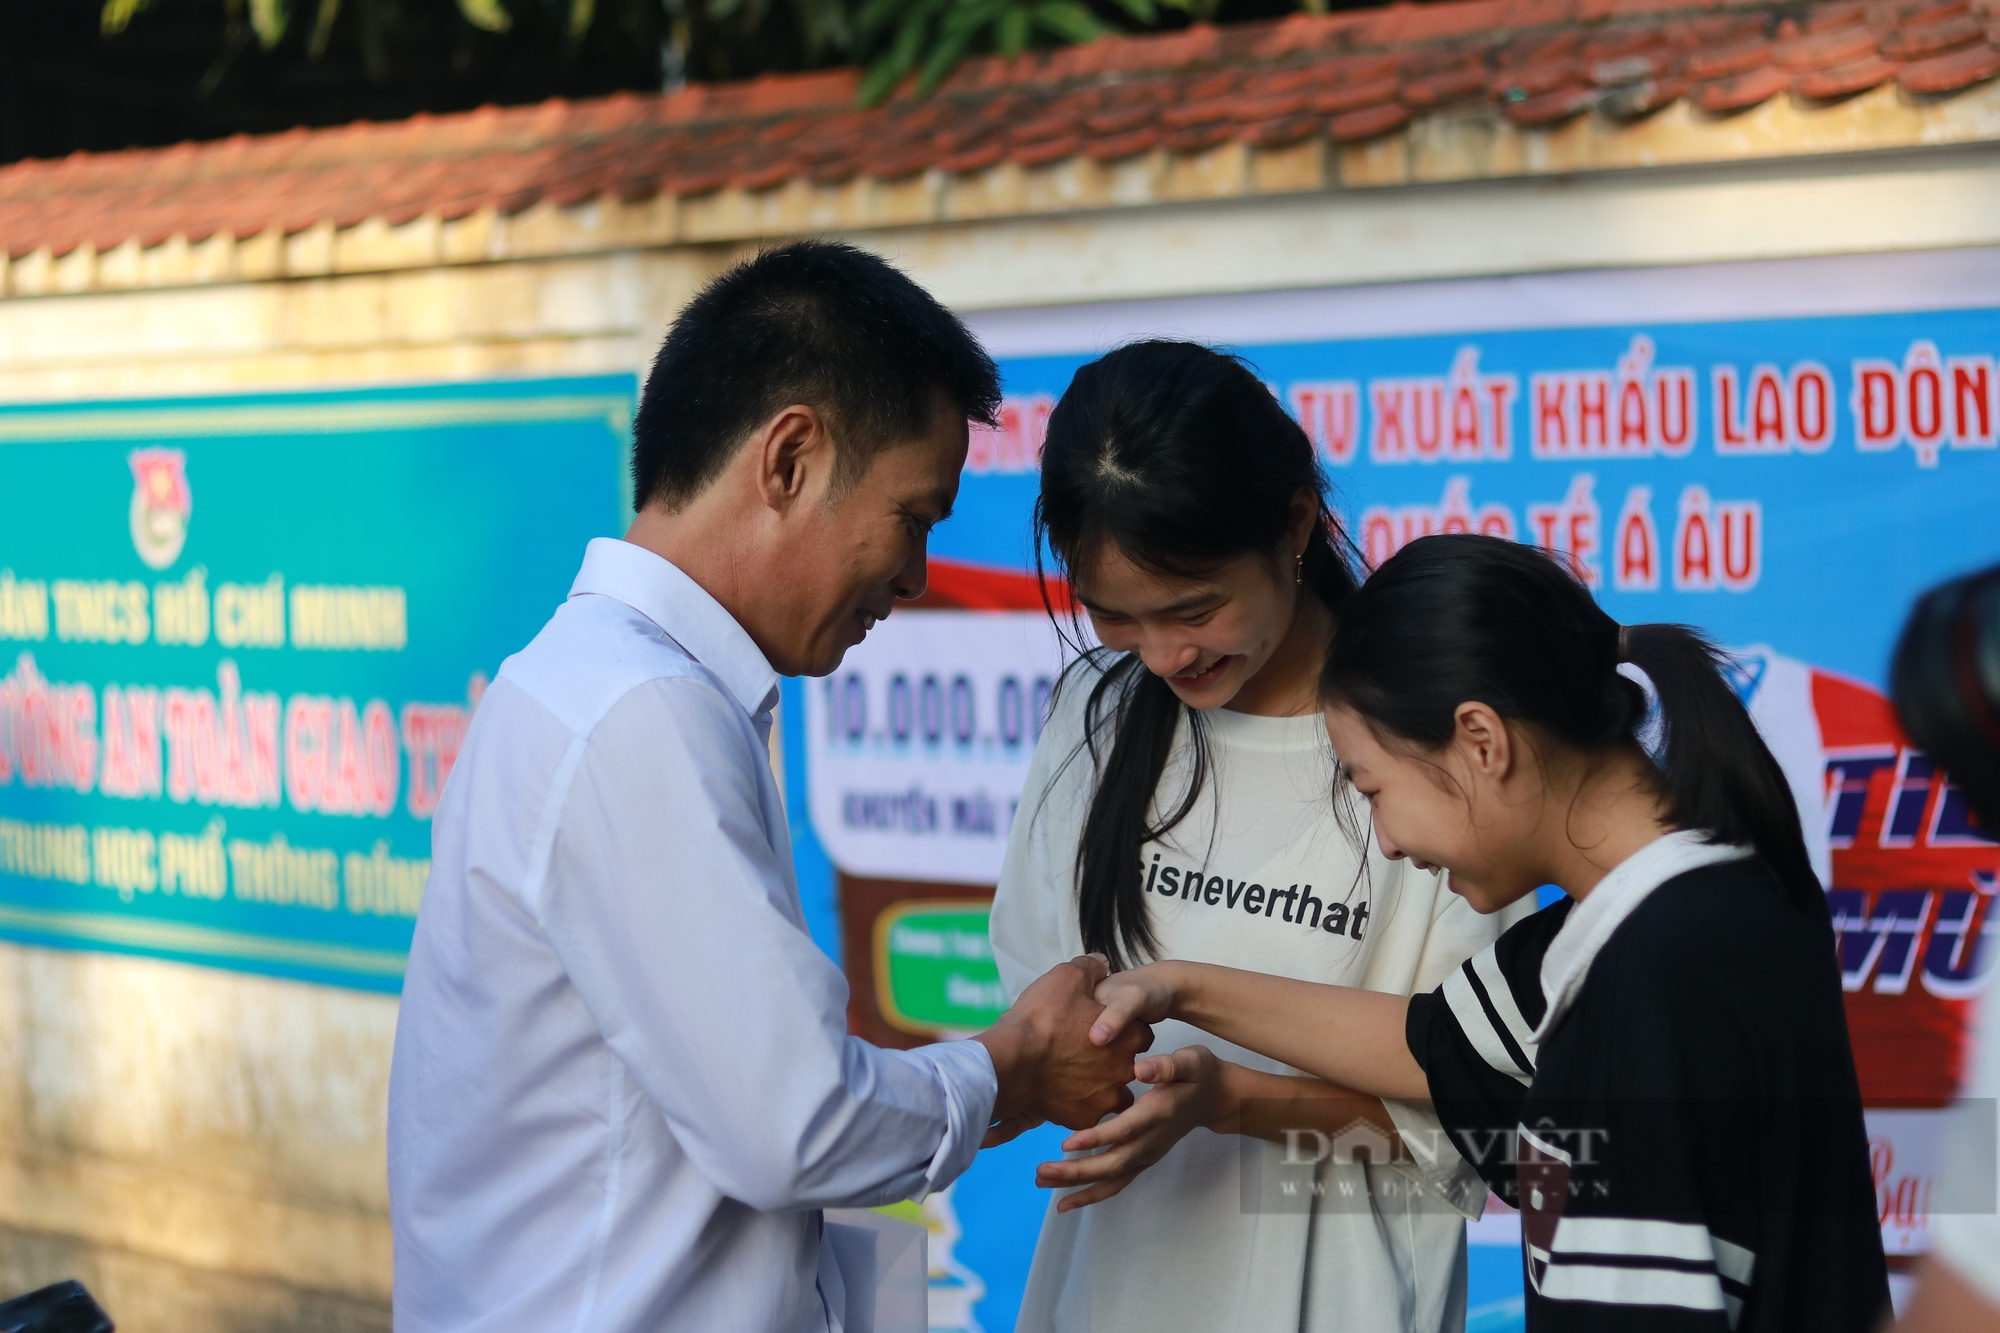 Hà Tĩnh: Trưởng thôn 46 tuổi quyết tâm dự thi THPT quốc gia để giúp đỡ bà con trong thôn phát triển kinh tế - Ảnh 6.